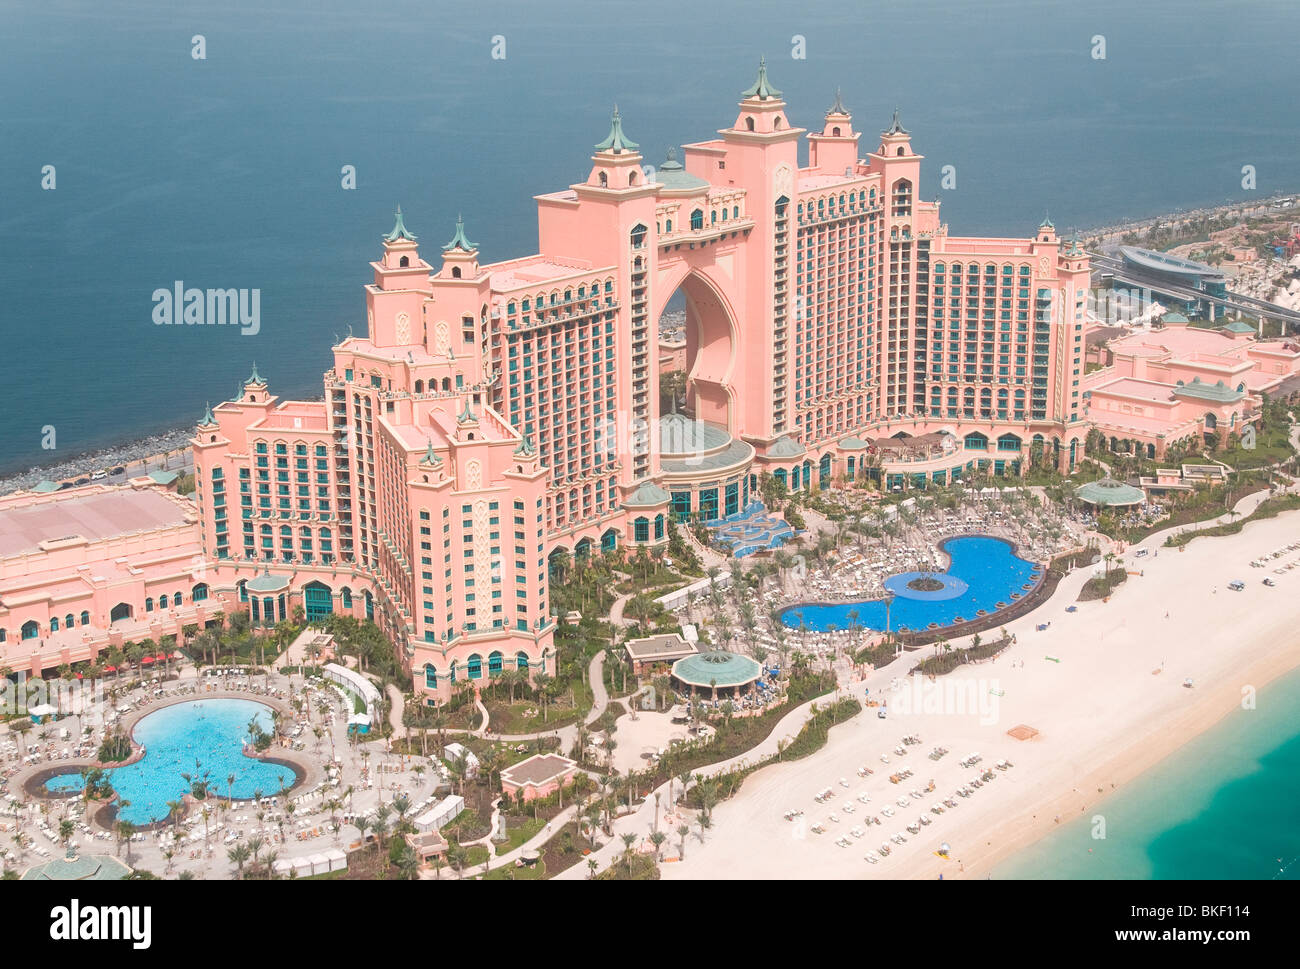 Fotografía aérea del Hotel Atlantis en la palma en Dubai, Emiratos Árabes Unidos Foto de stock